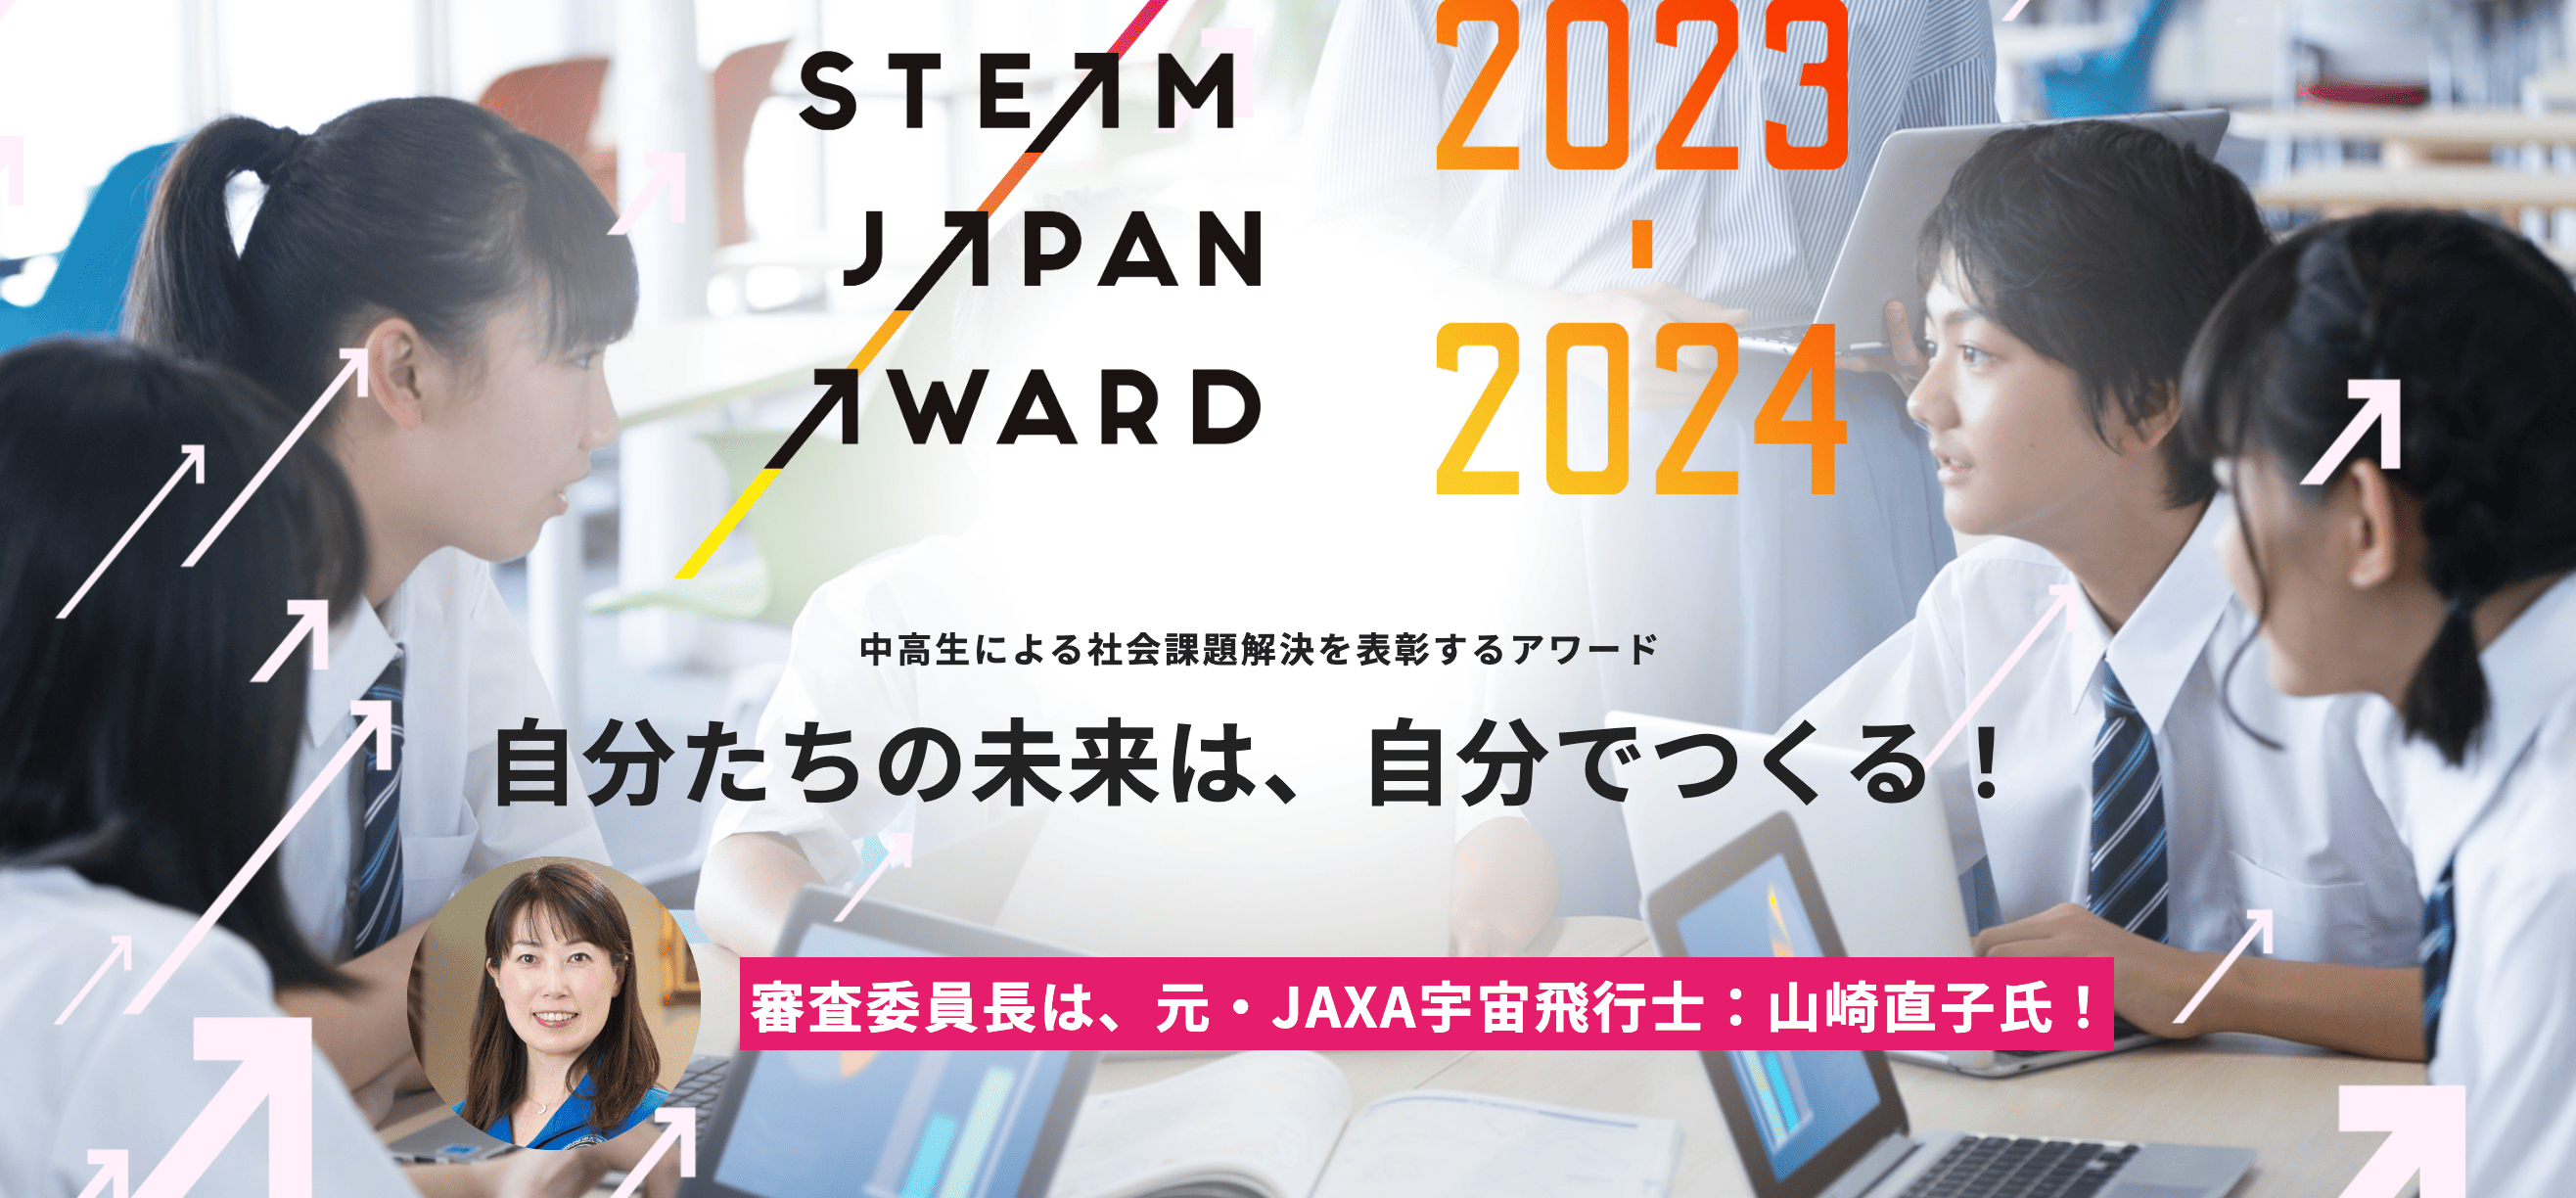 中高生による社会課題解決を表彰するアワード「STEAM JAPAN AWARD 2023→2024」開催！審査委員長は元・JAXA宇宙飛行士 山崎直子氏